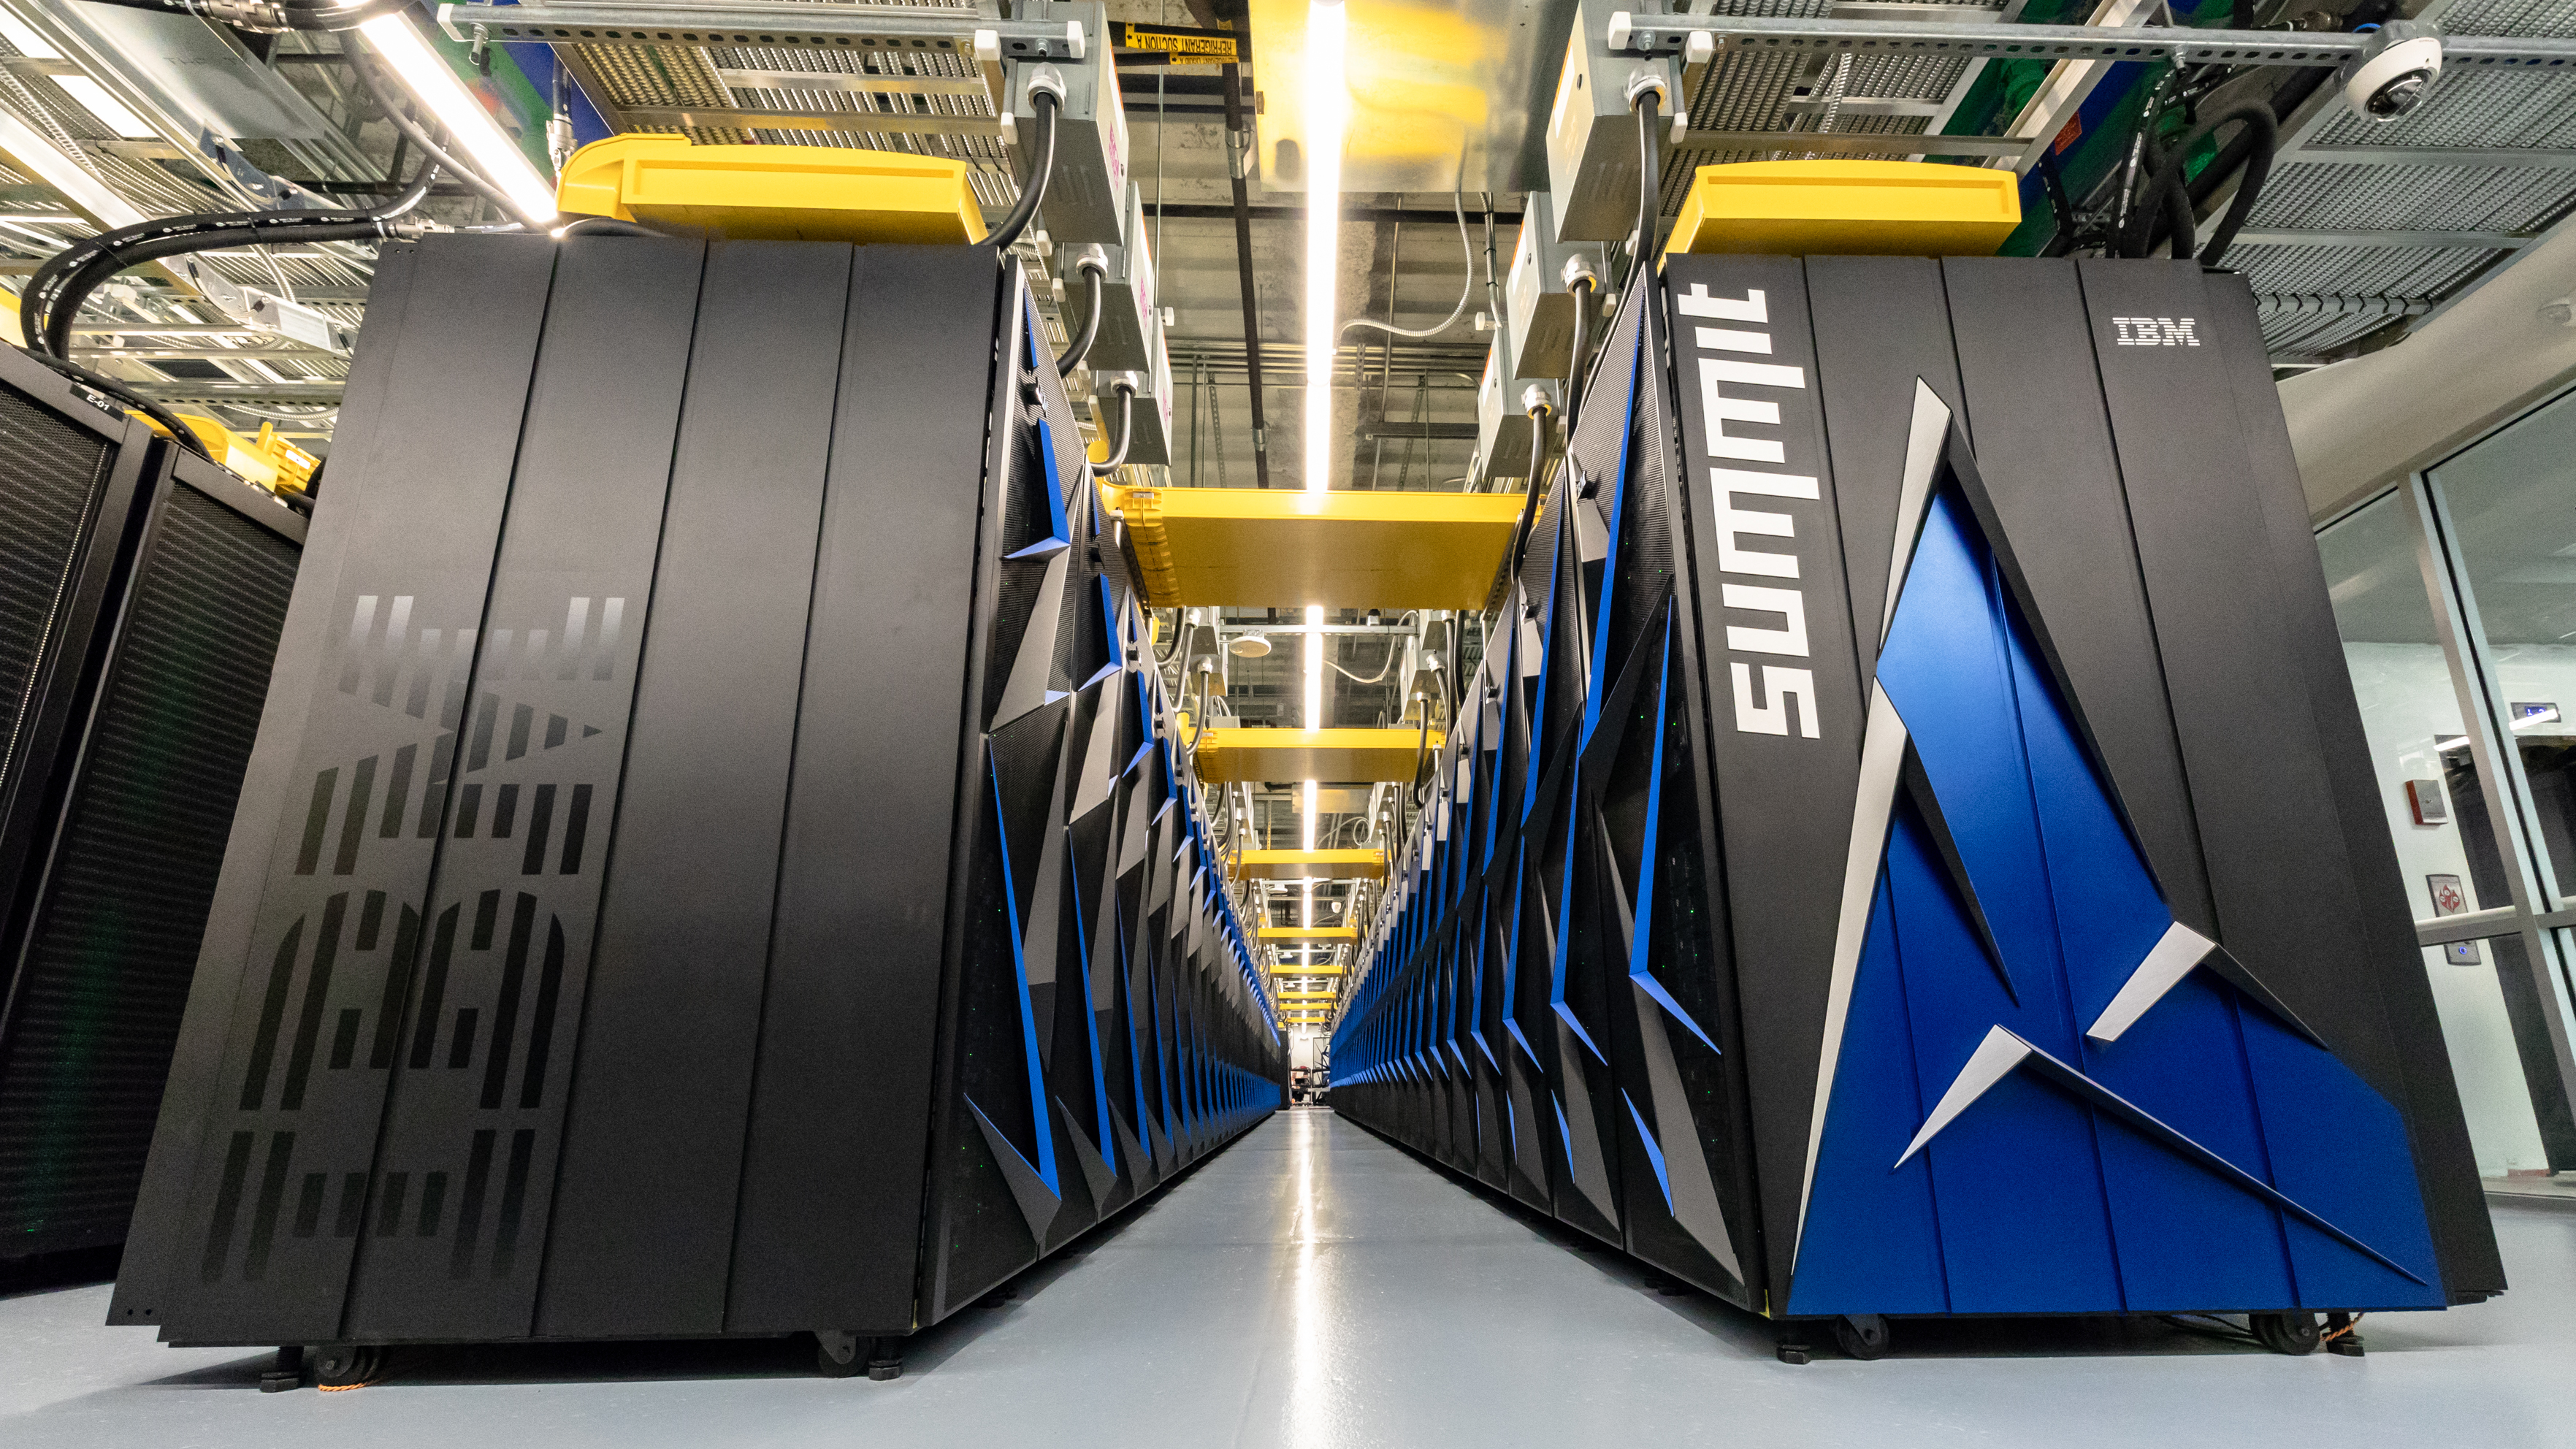 Summit Supercomputer at ORNL